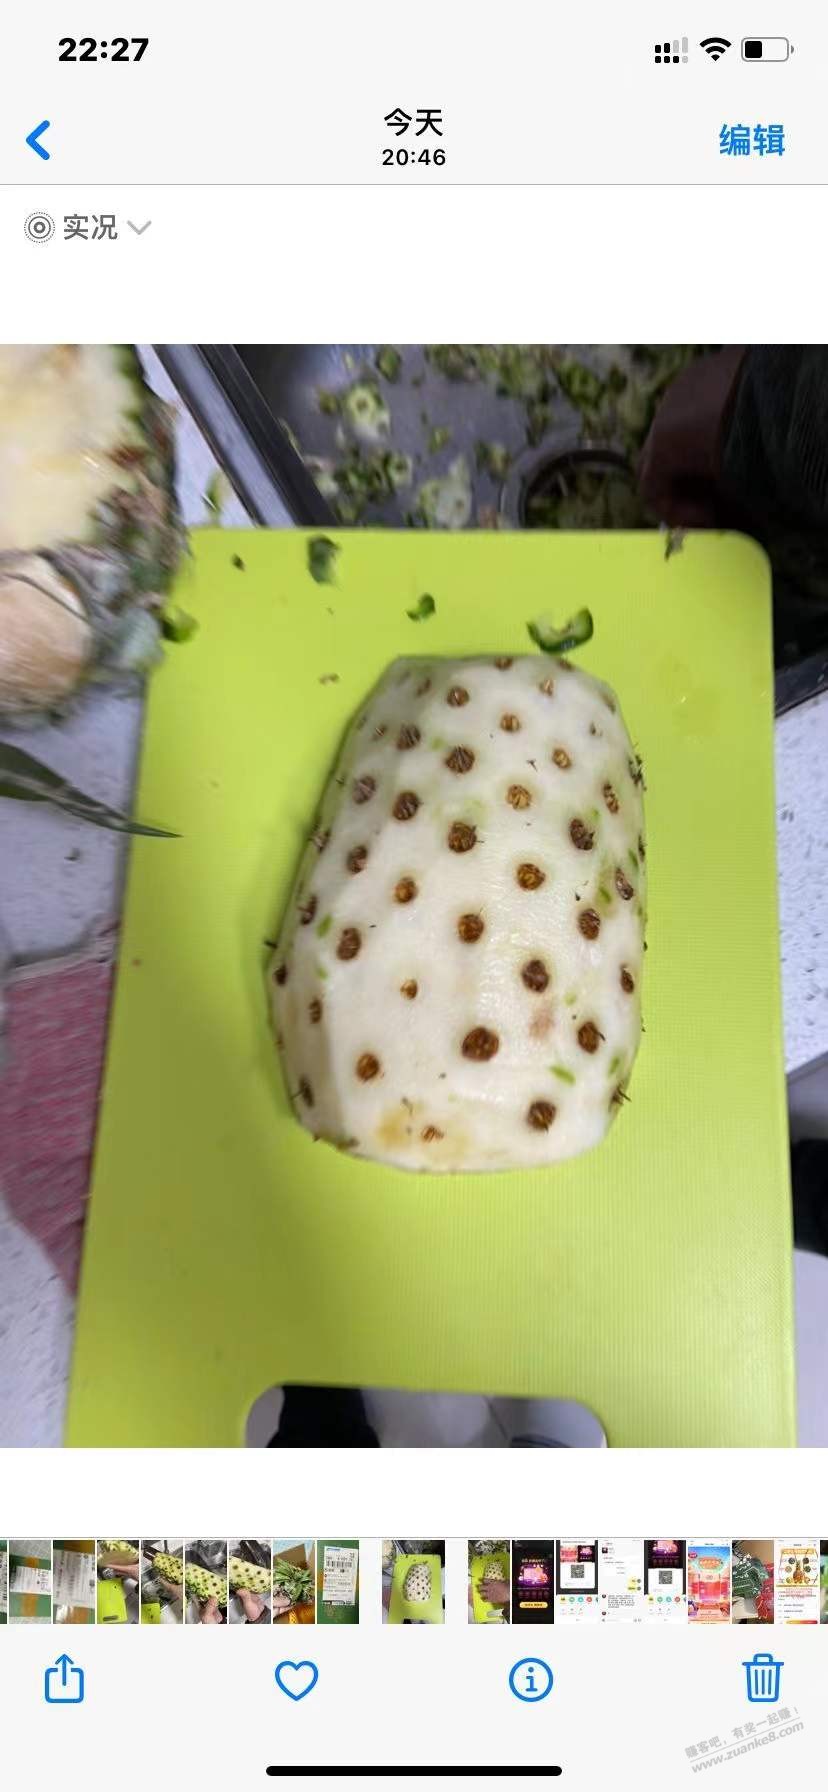 上次ysf京品买凤梨收到菠萝的后续来了-准备索赔500-惠小助(52huixz.com)